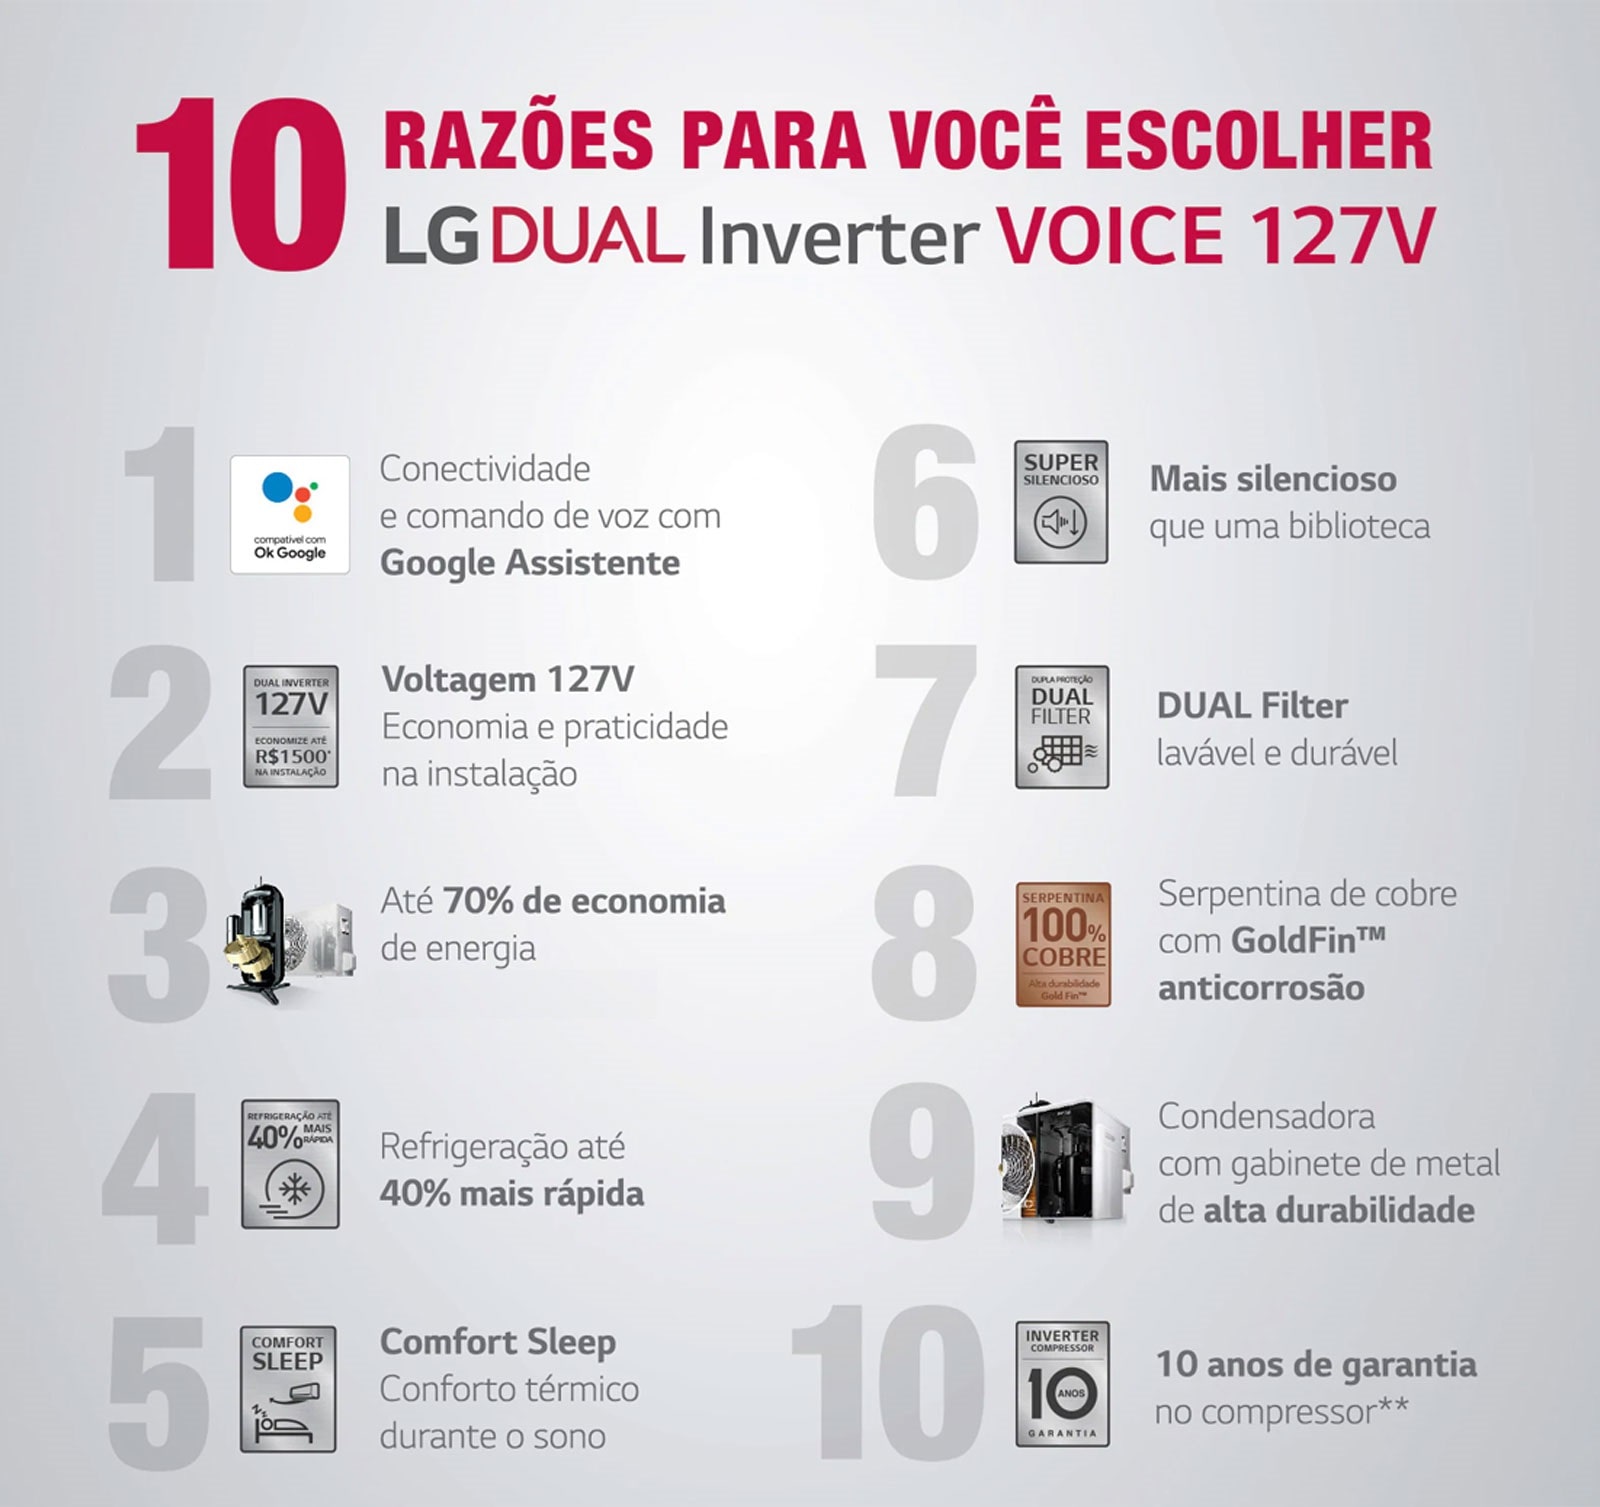 LG DUAL Inverter Voice 127V